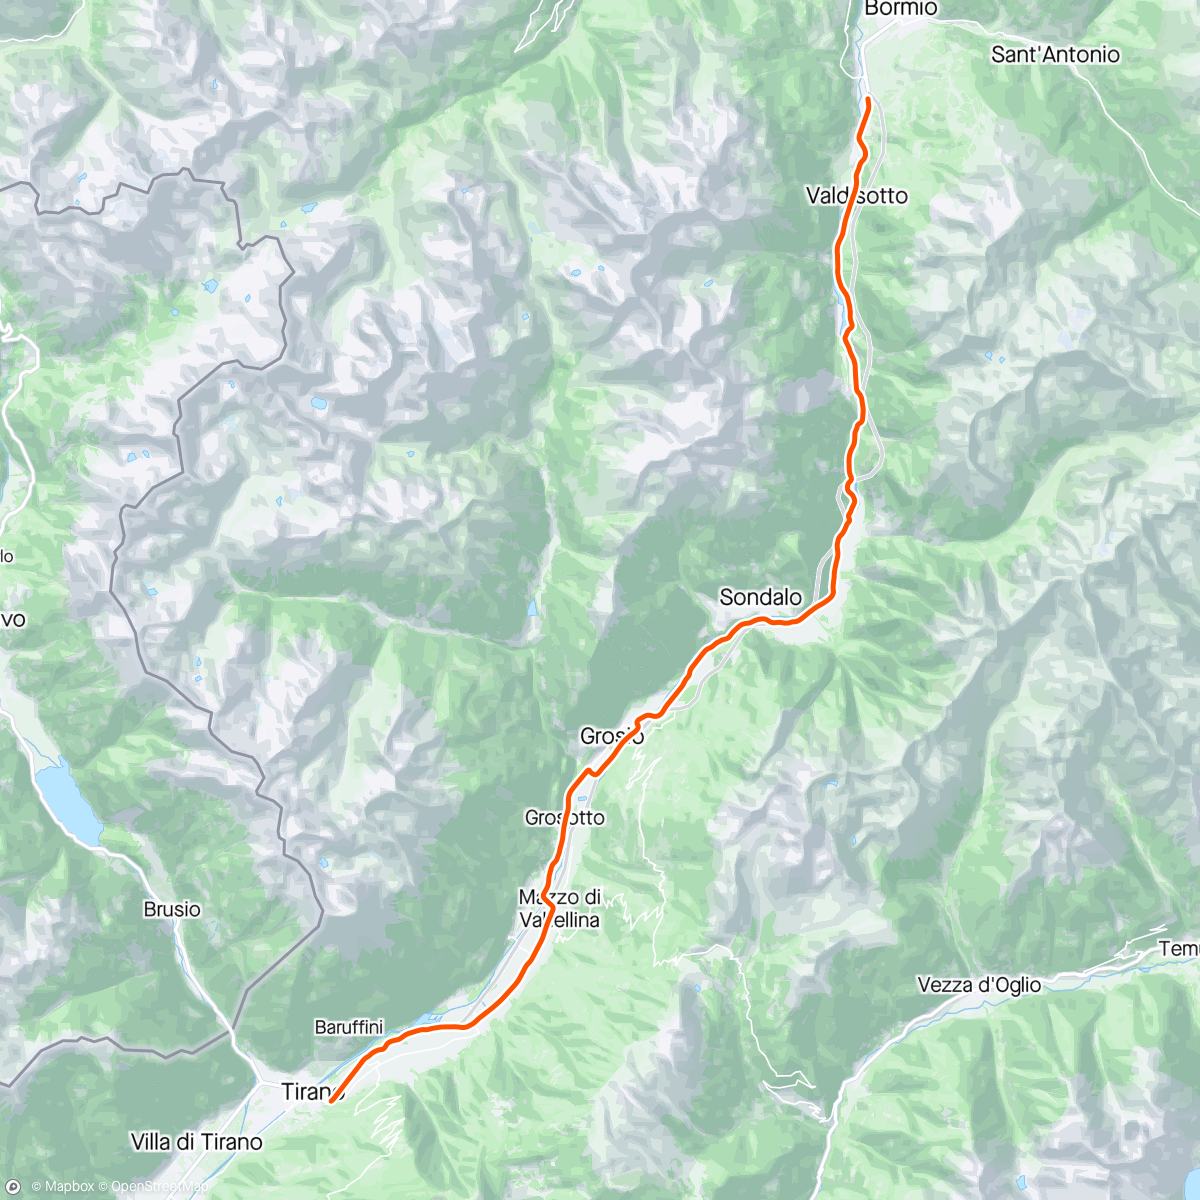 Map of the activity, ROUVY - Bormio to Tirano | Italy | nix draussen